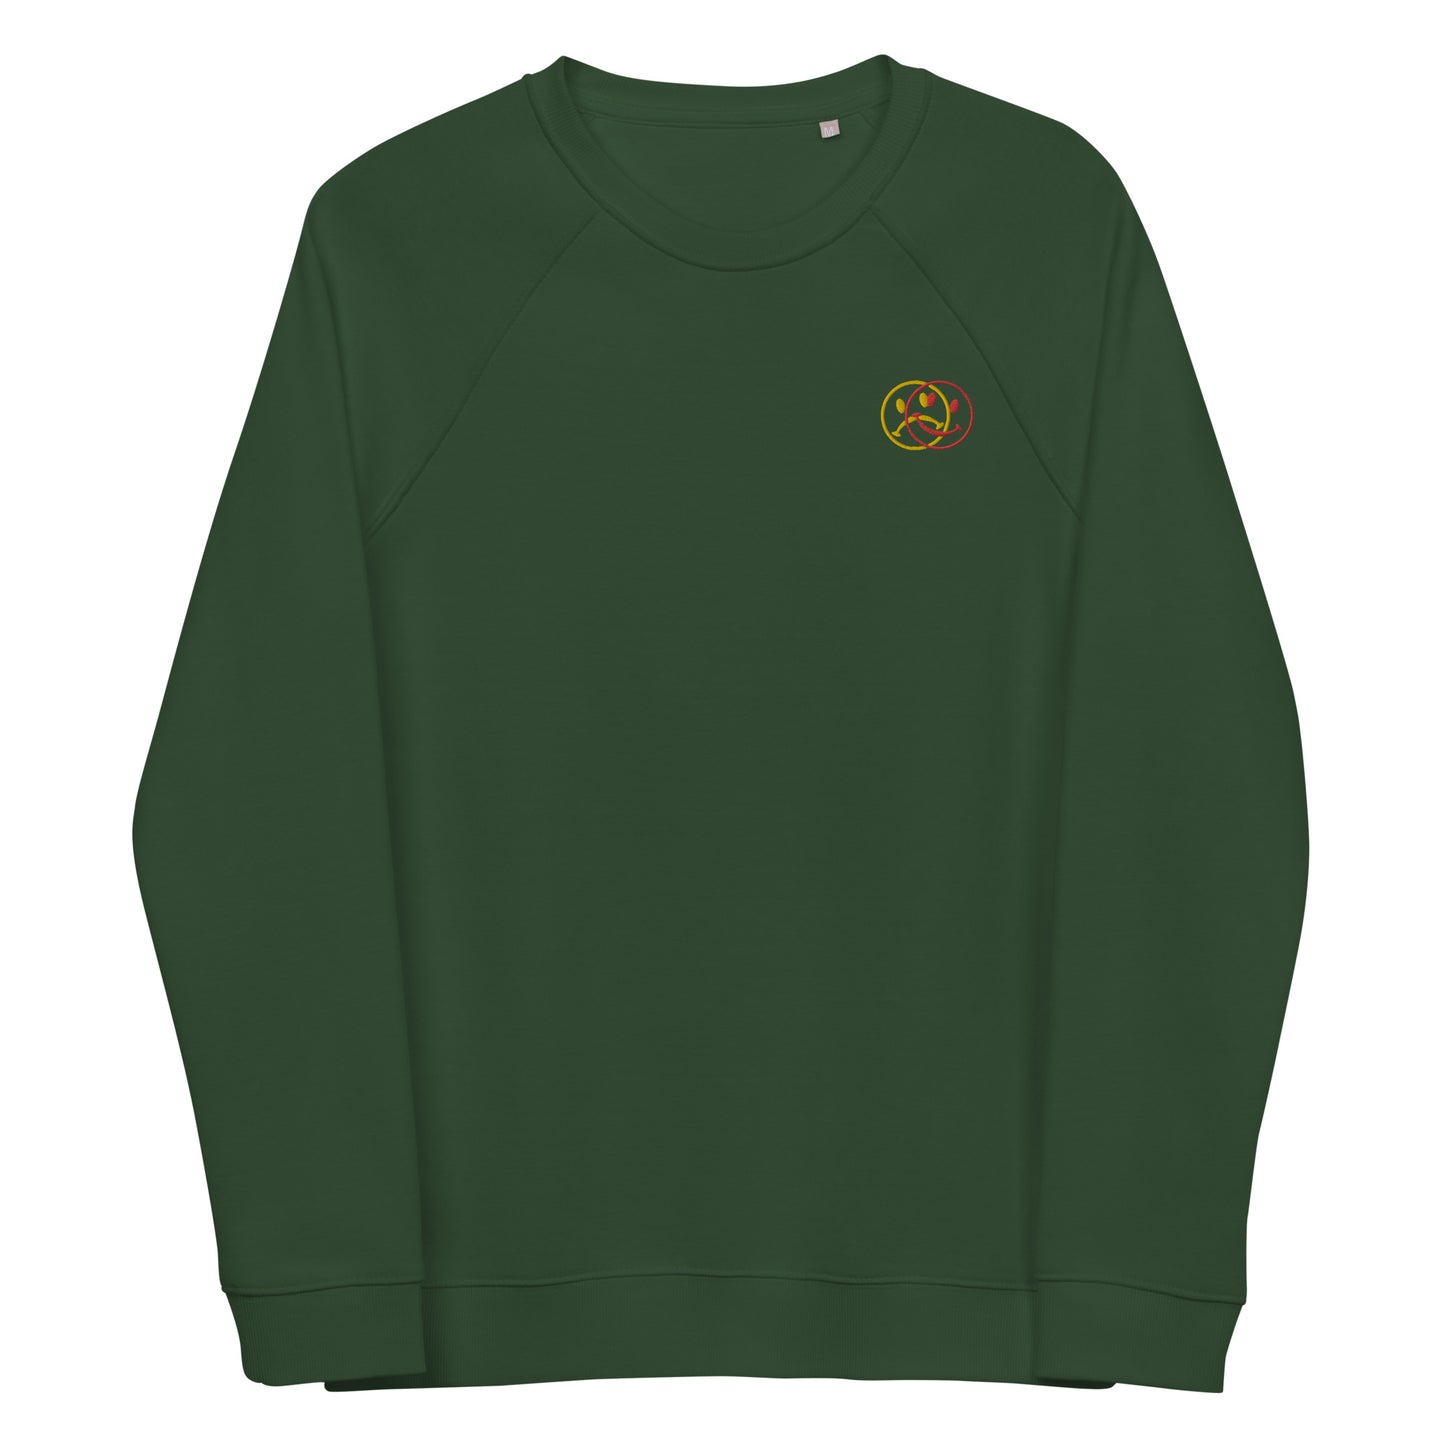 KÄNSLOR - Embroidered Unisex organic raglan sweatshirt